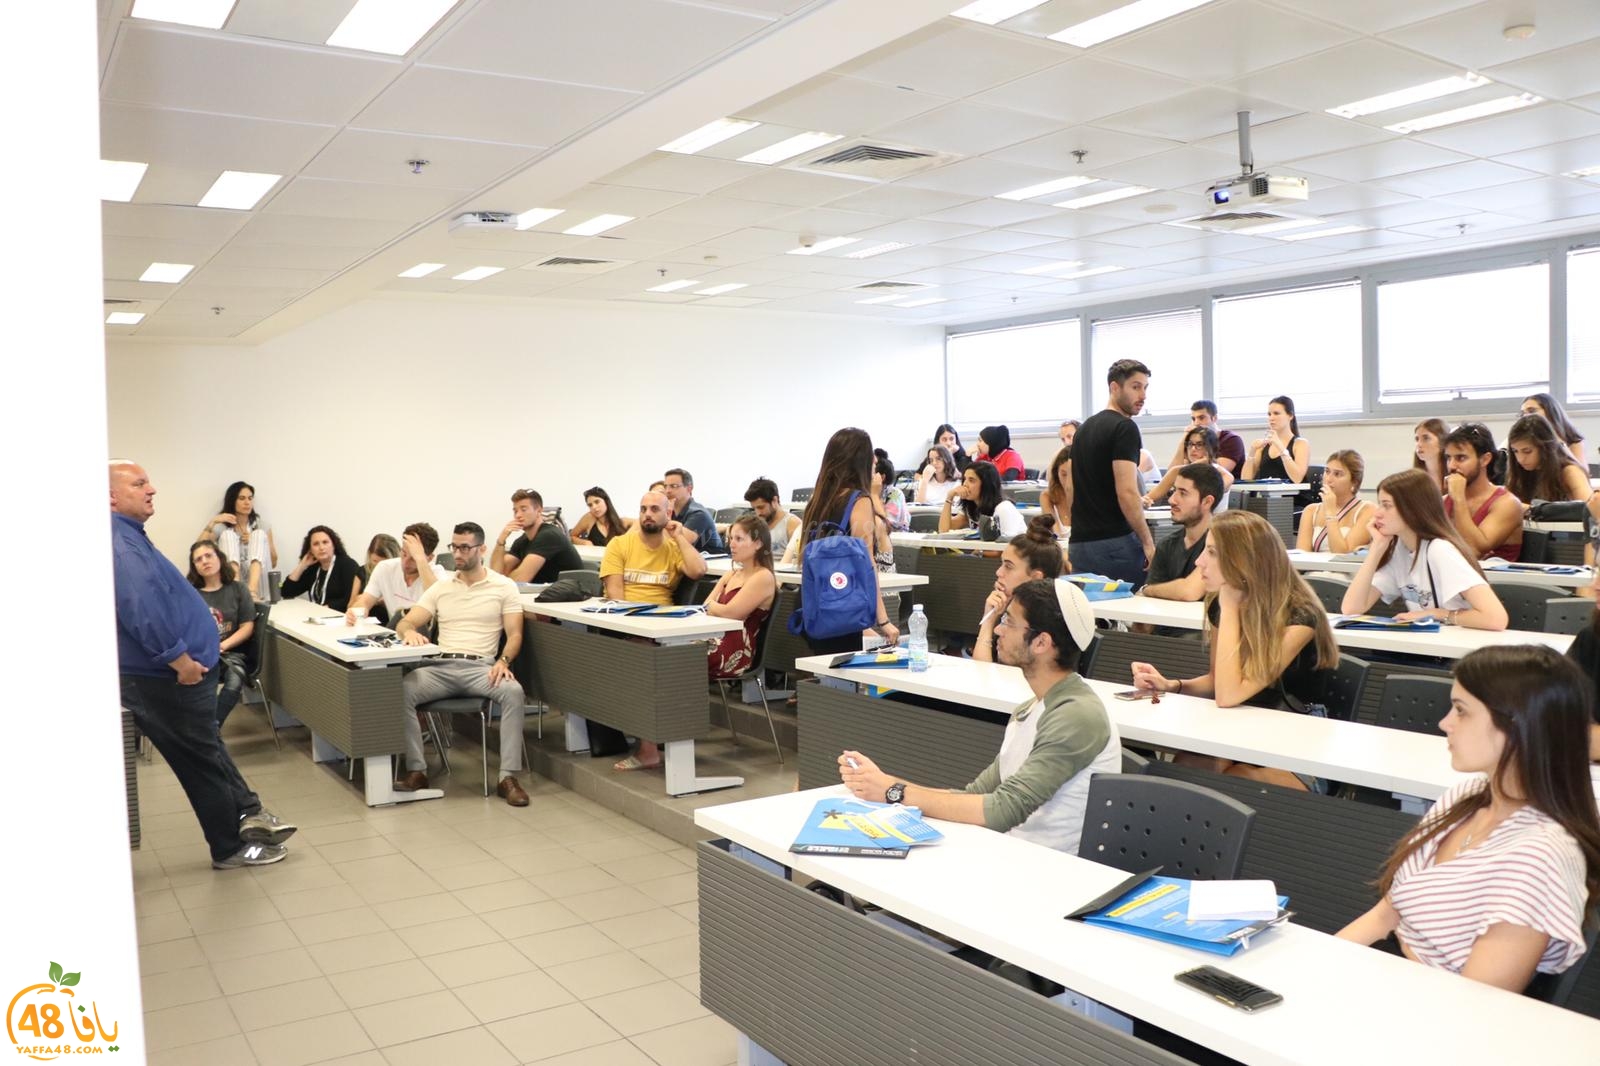  بالصور: الكلية الأكاديمية تل أبيب يافا تُنظم يوماً مفتوحاً بمشاركة العديد من الطلاب العرب